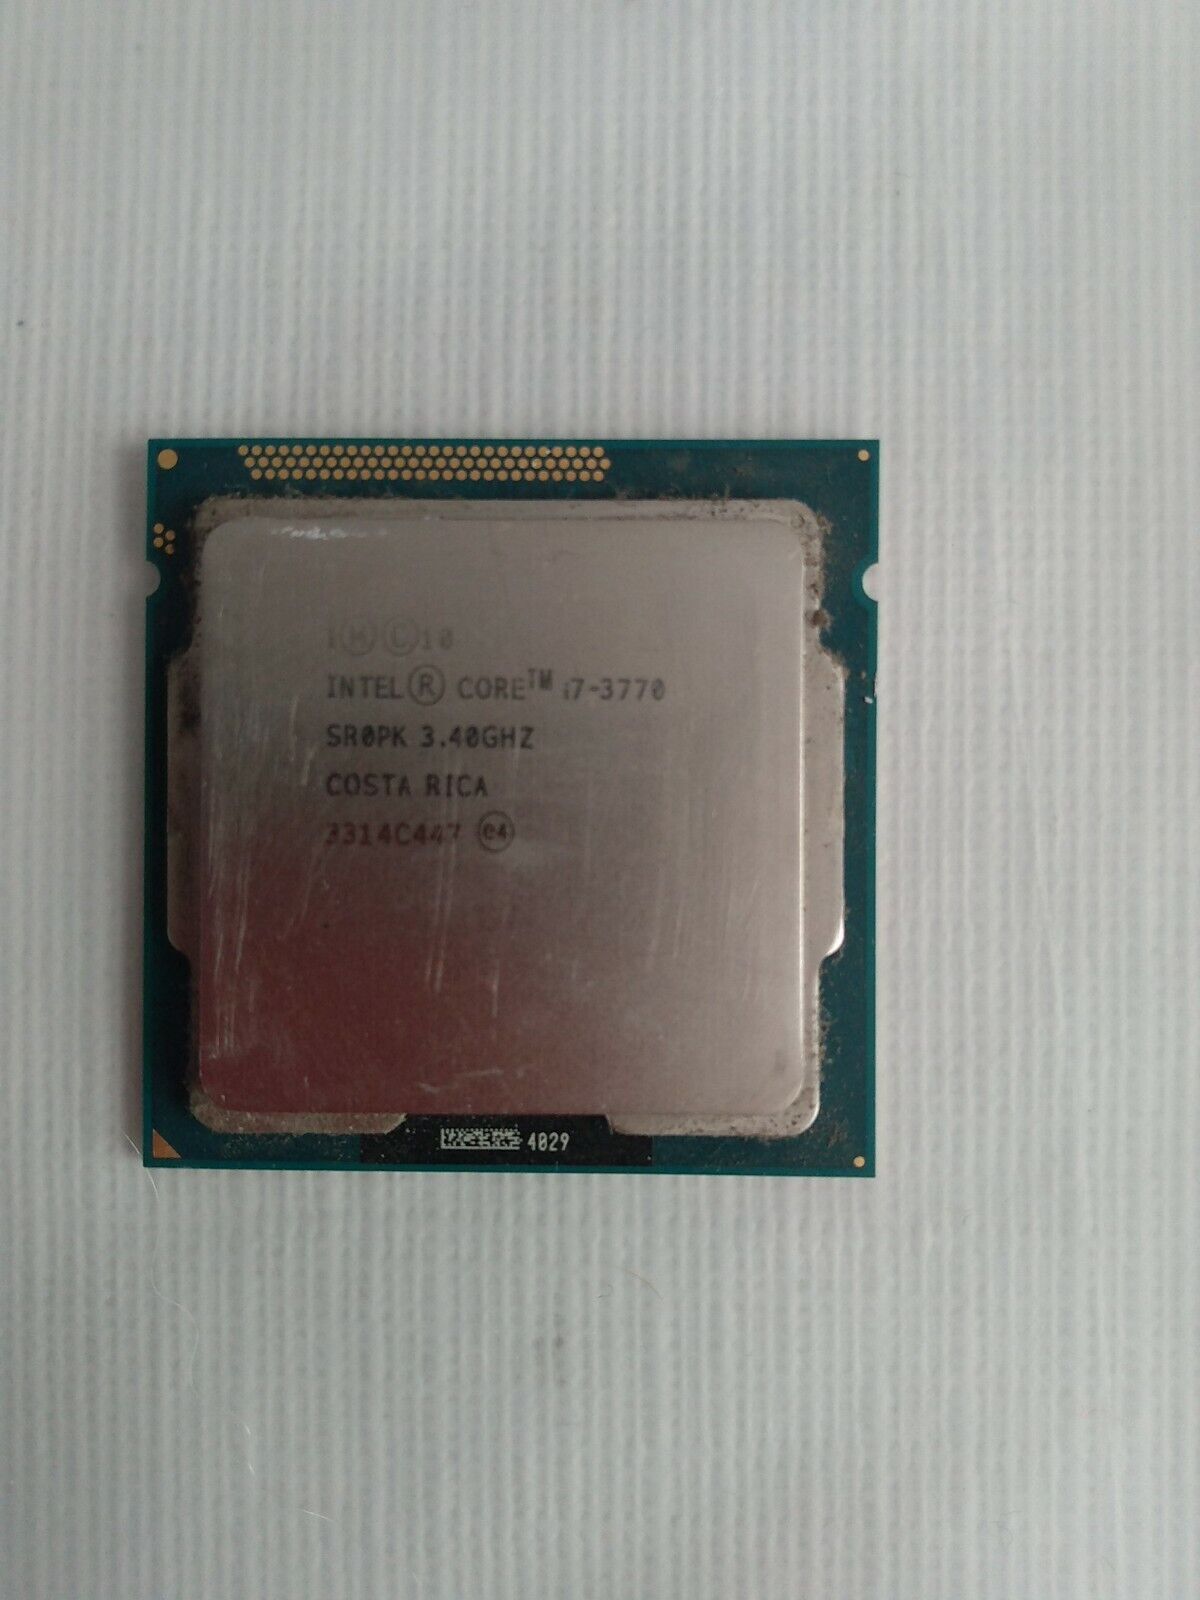 Intel Core i7-3770 3.40GHz Quad Core LGA1155 8MB CPU Processor SR0PK